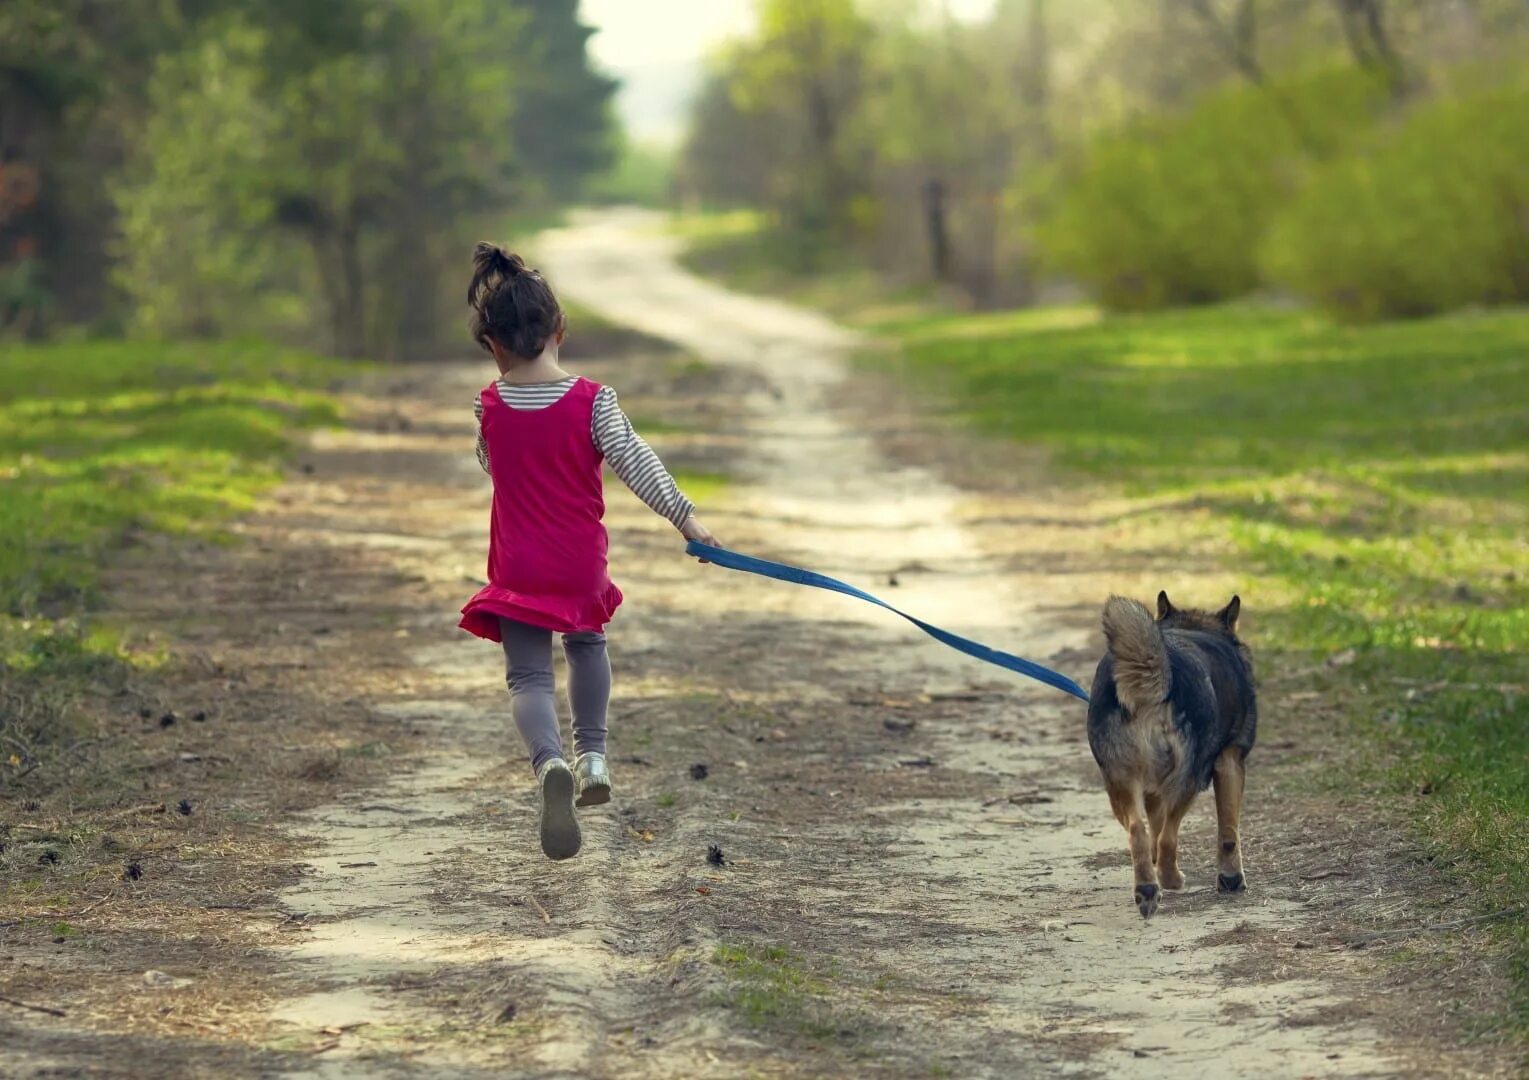 Собаки бегут по дороге. Собака бежит по дороге. Девушка бежит с собакой. Девочка бегает на поле с собакой. Собака бегает по дороге.